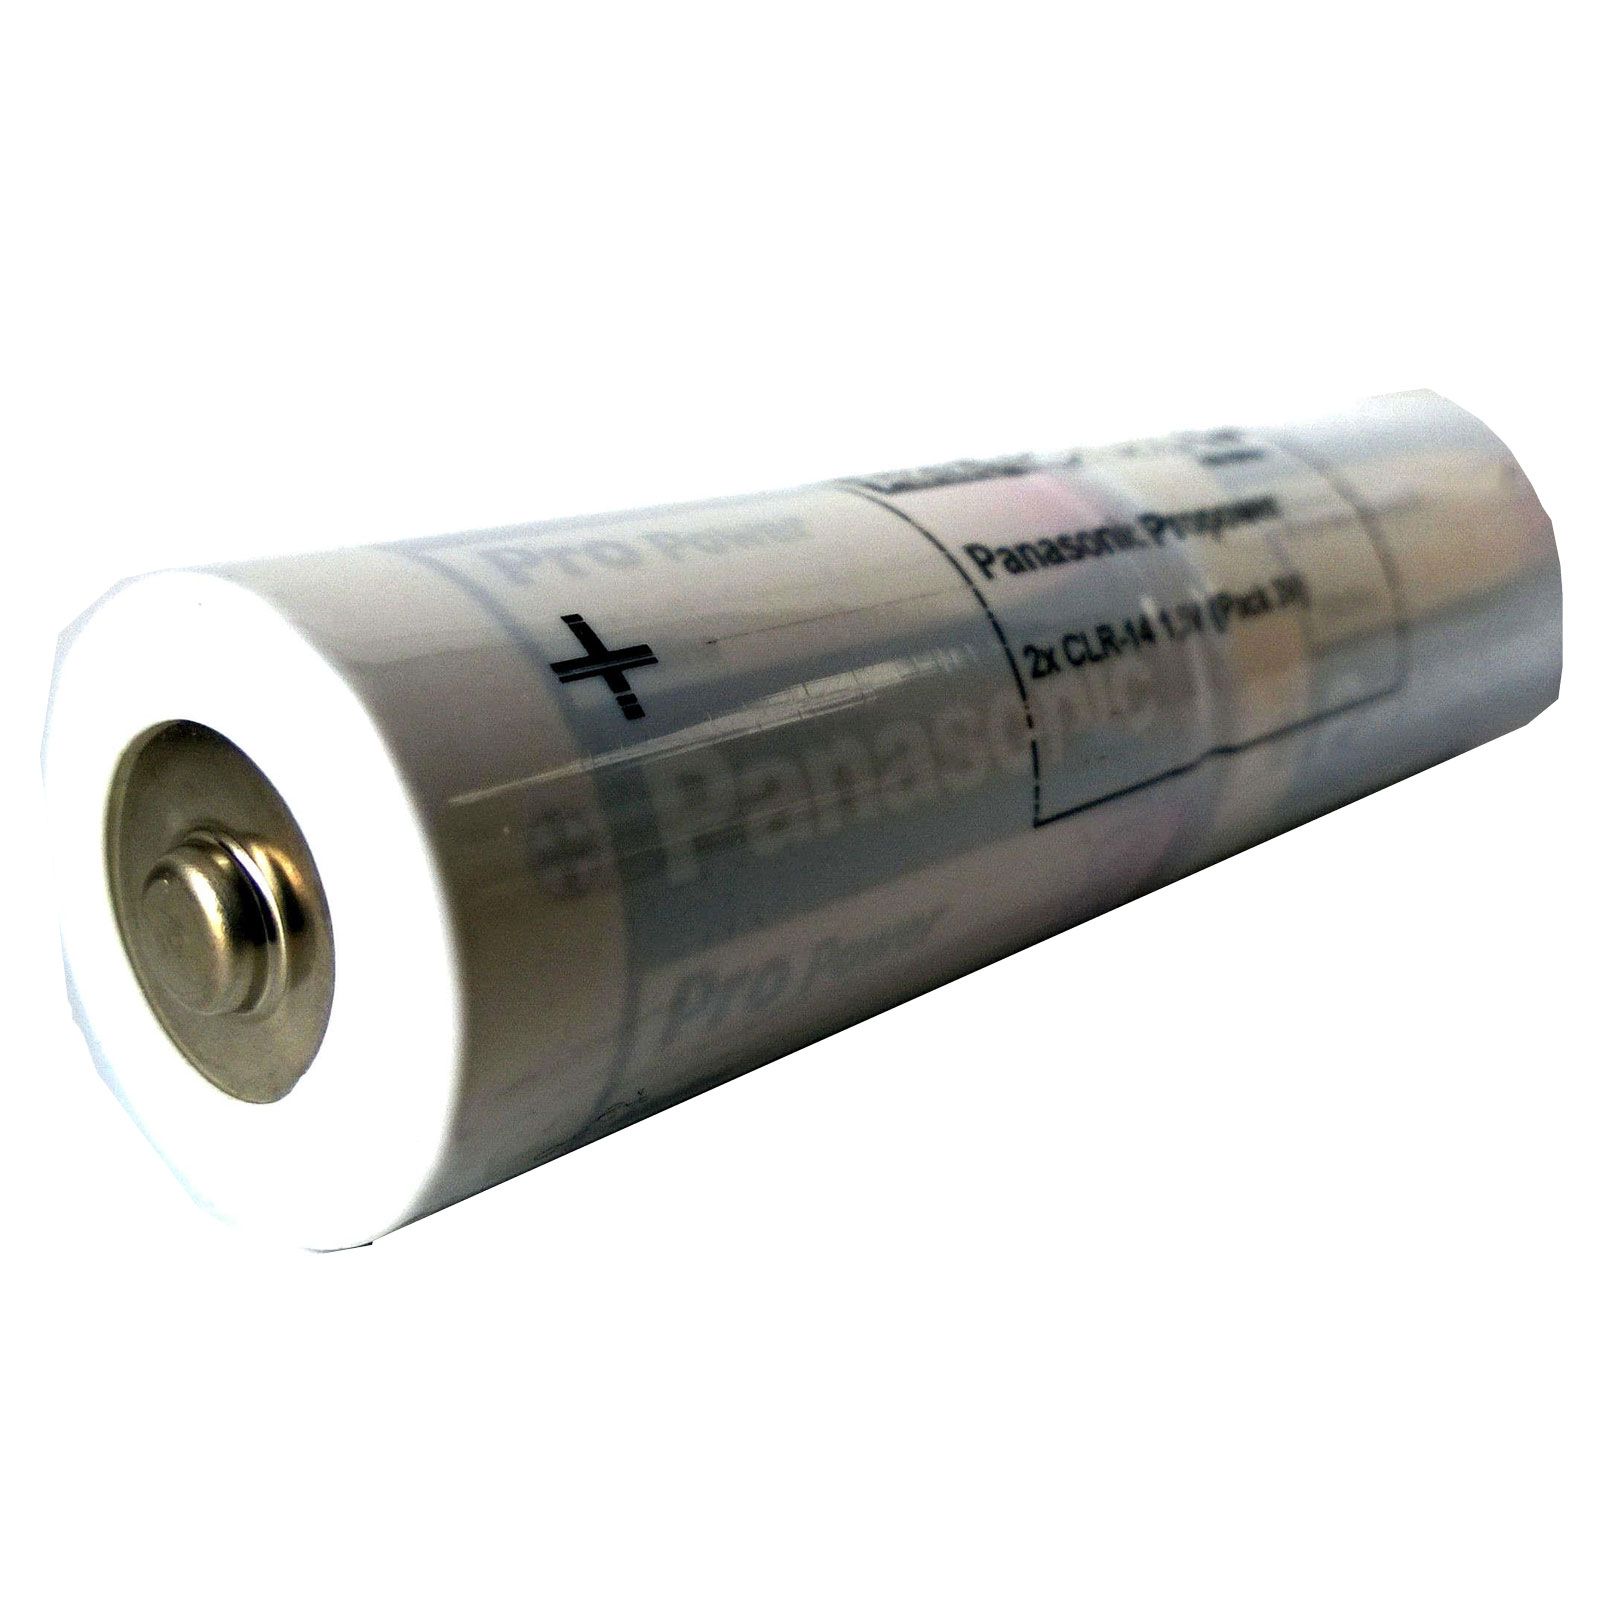 Batteriepack Alkaline Panasonic Pro Power L2x1 Baby C 3V 